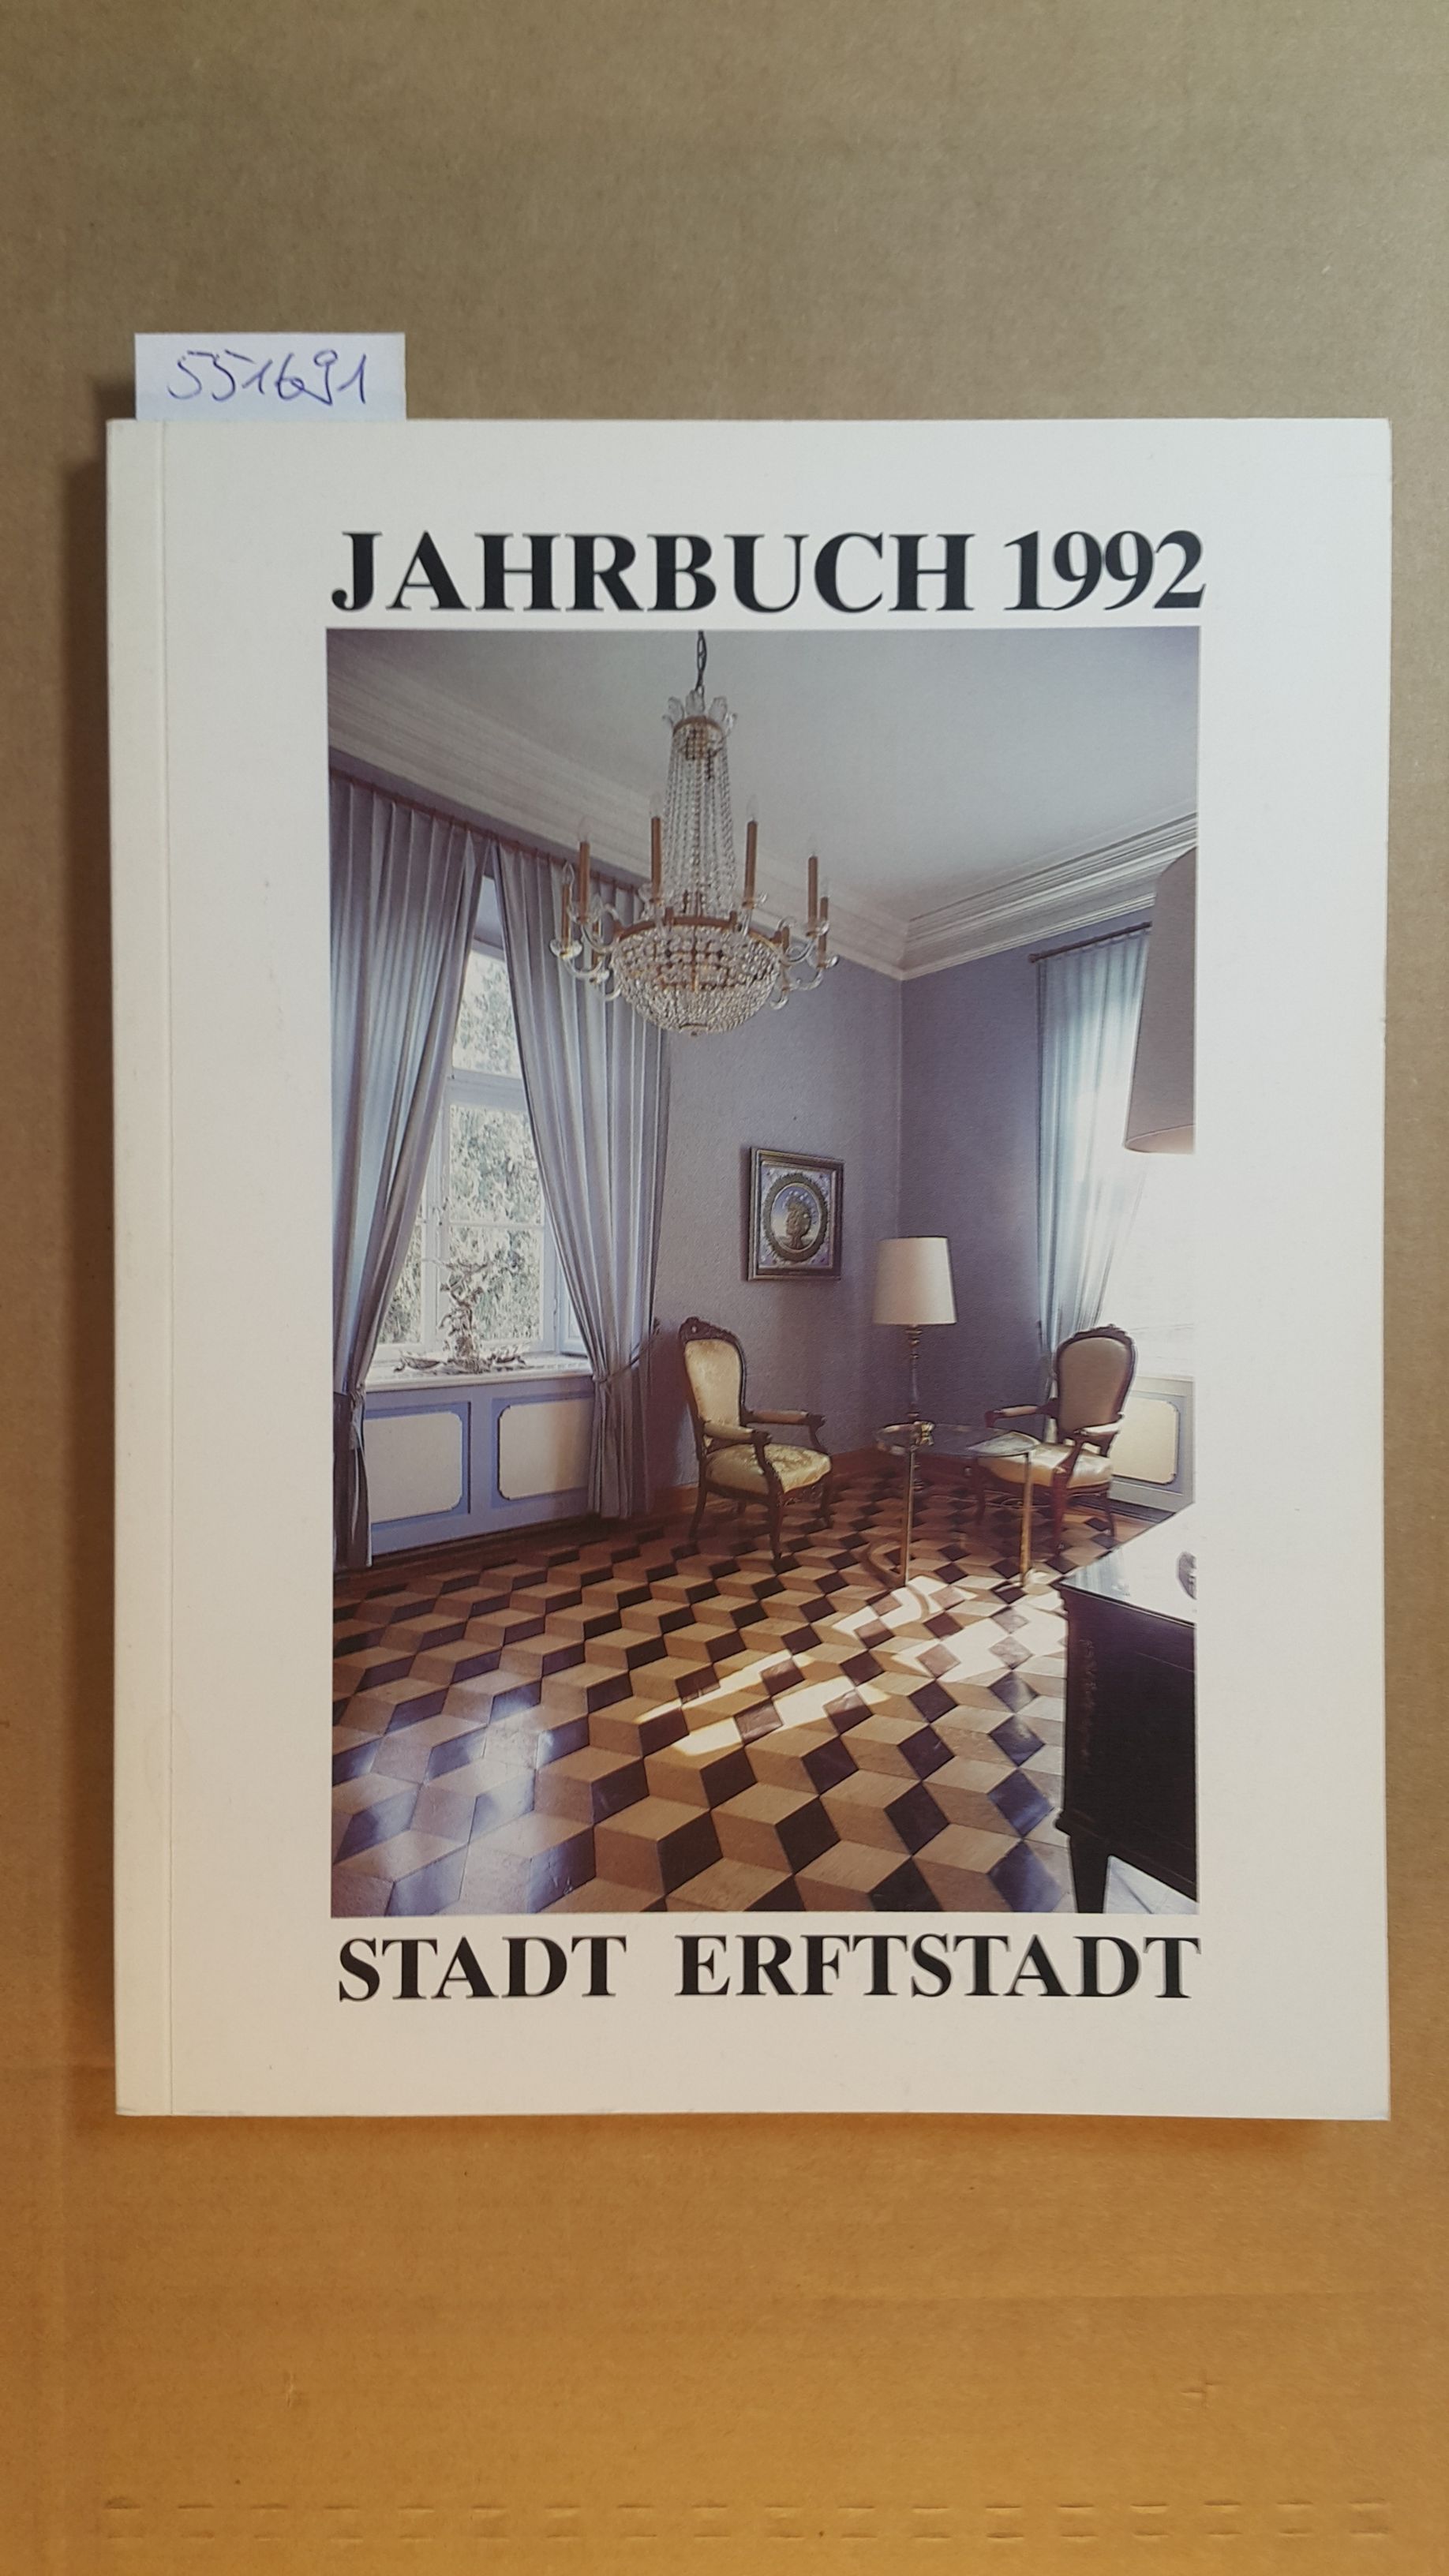 Jahrbuch 1992 - Stadt Erftstadt - Stadt Erftstadt (Herausgeber)